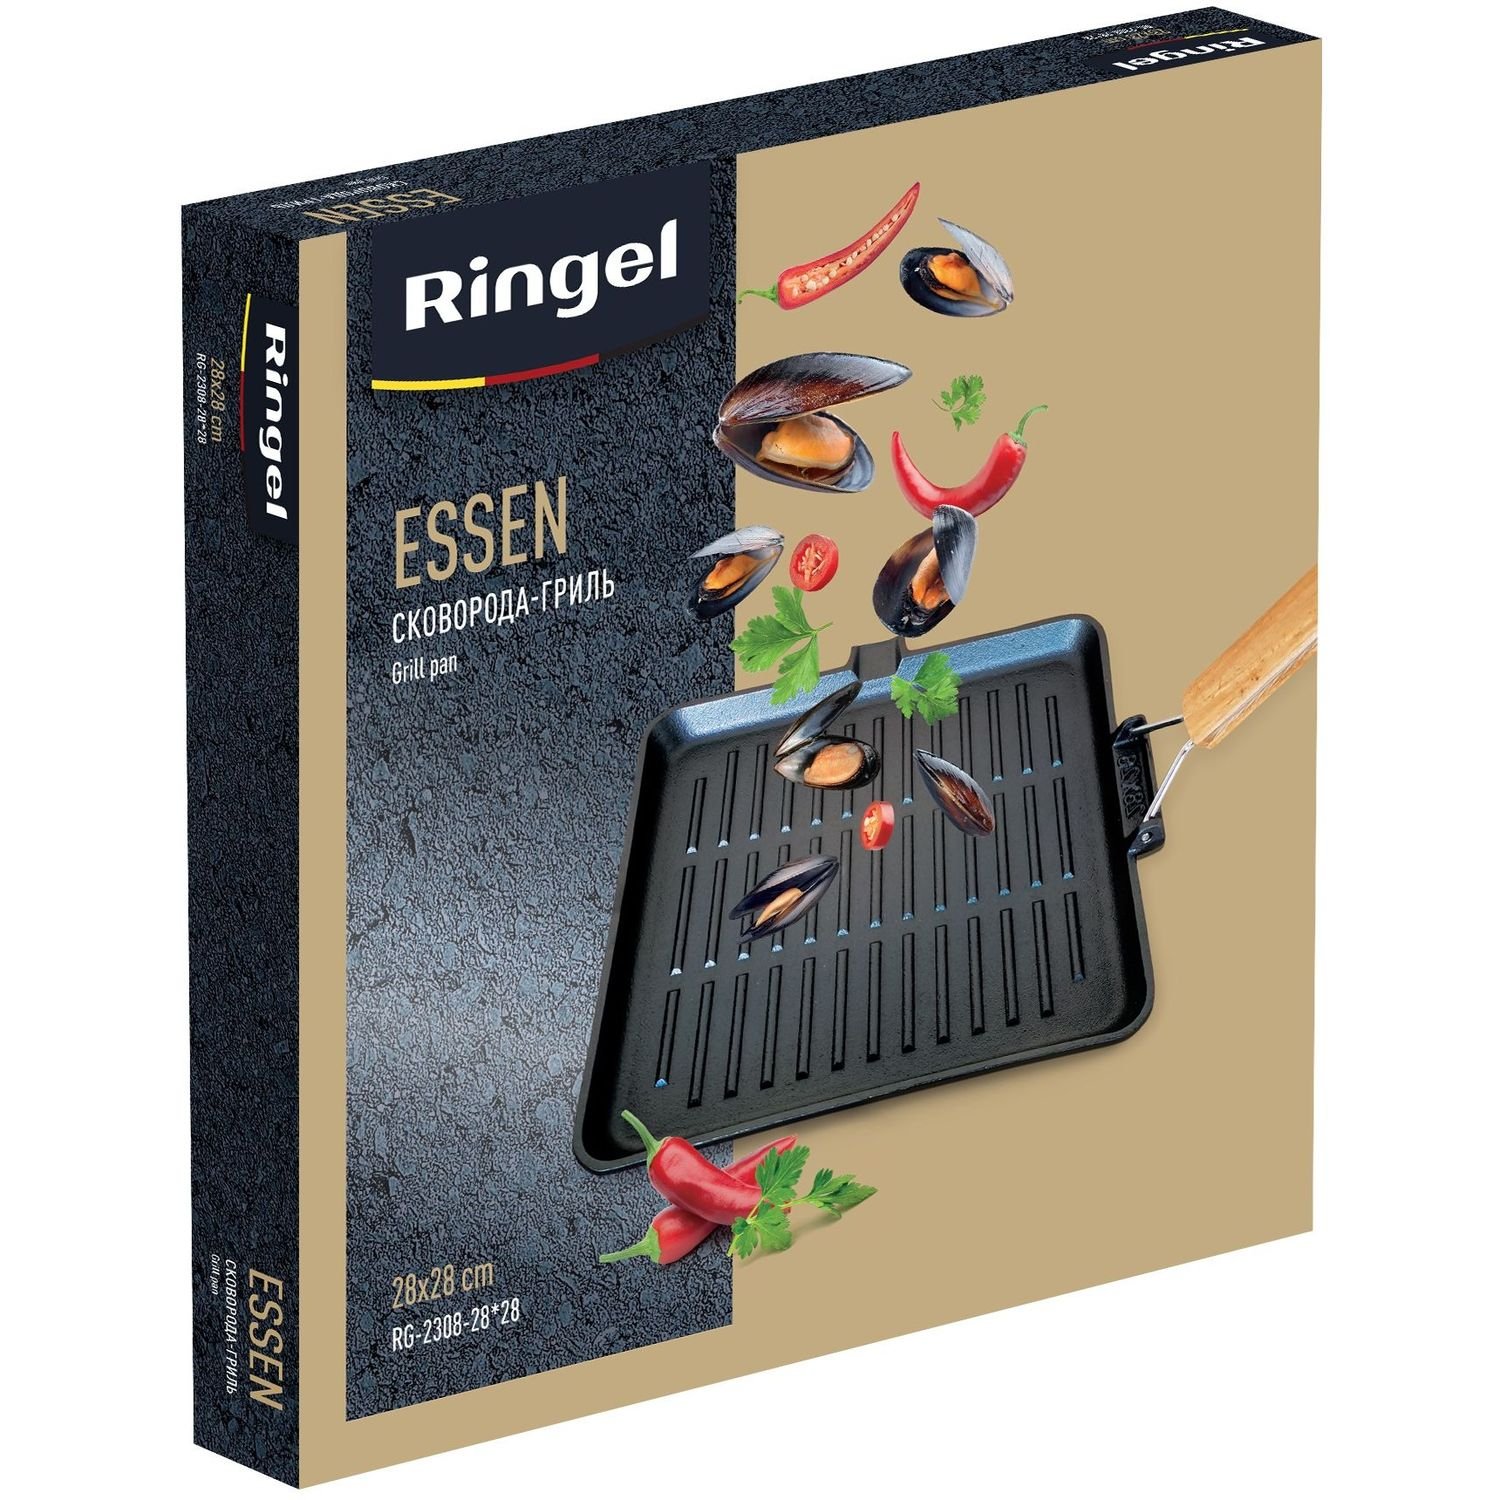 Сковорода-гриль Ringel Essen, чугунная с ручкой, 28 см (RG-2308-28*28) - фото 3